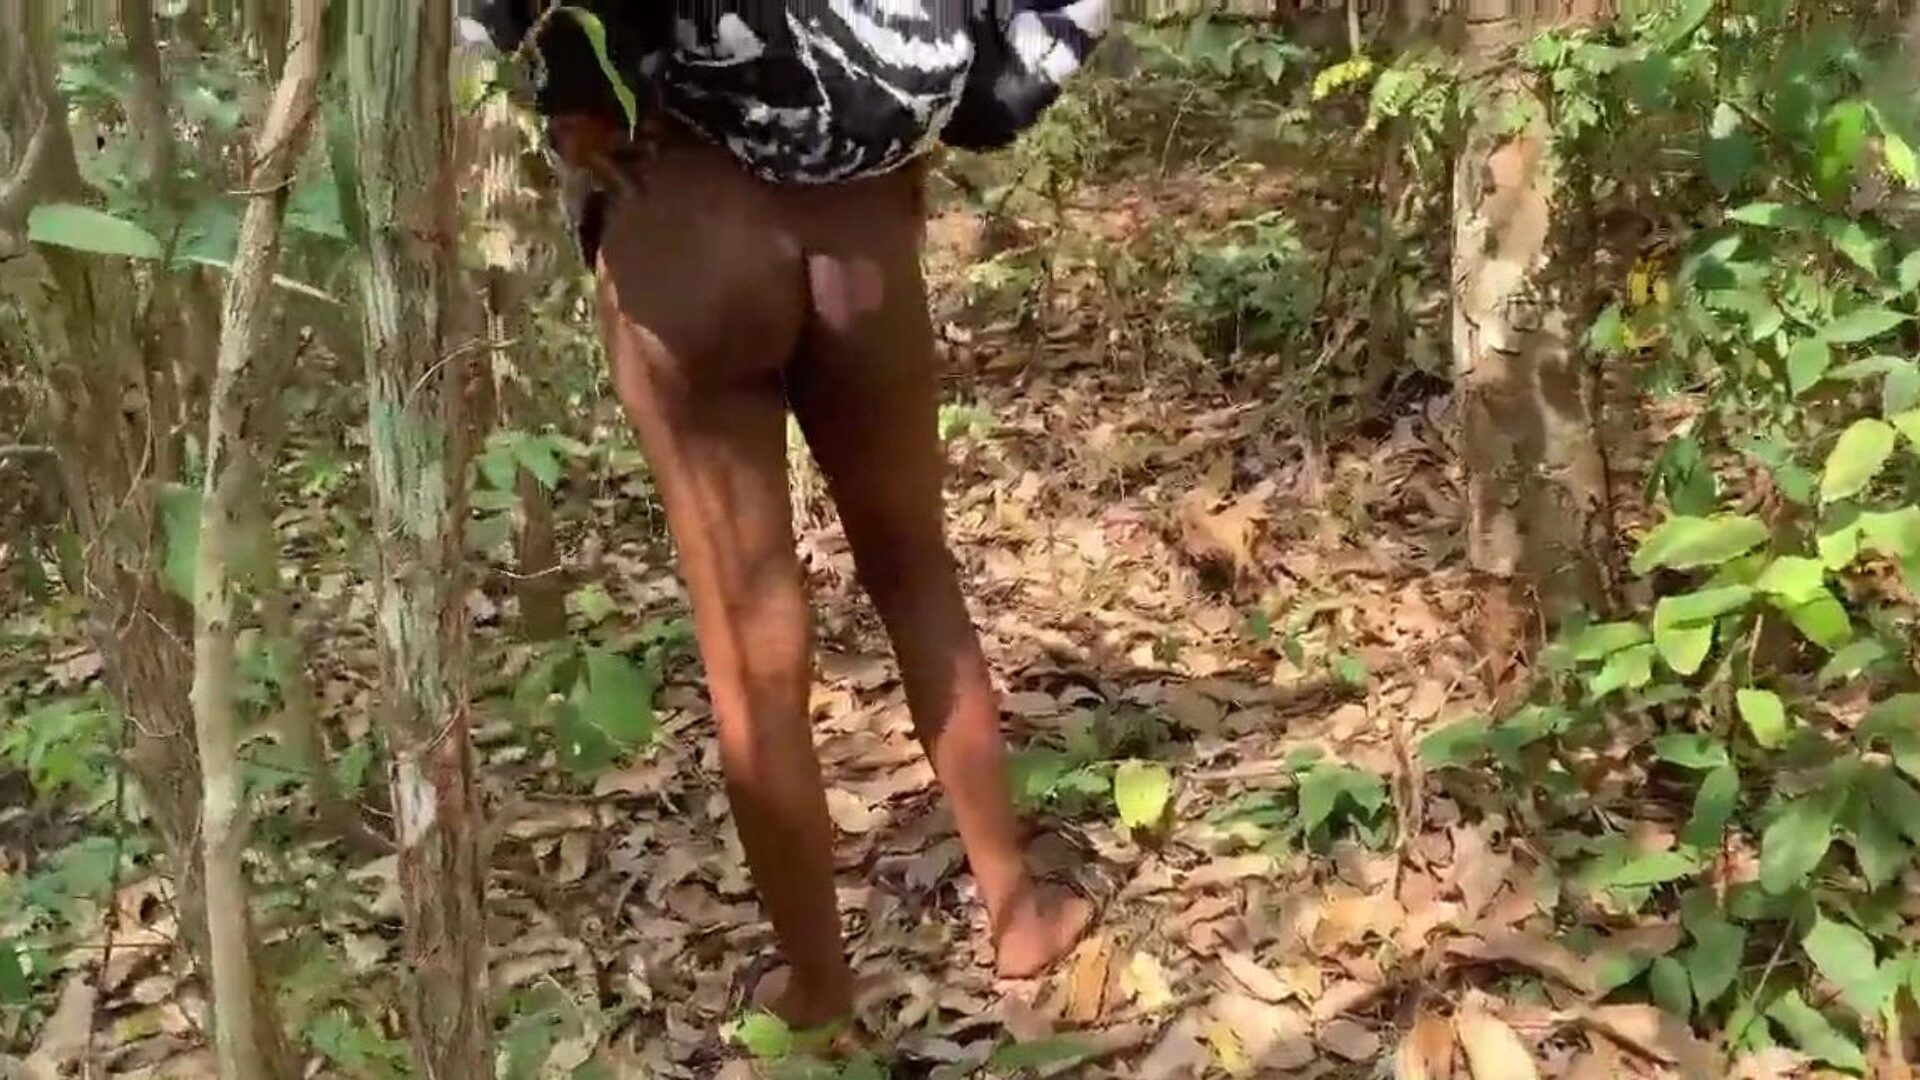 universitetslektor knulle studenten sin i bushen for å gi henne bestått karakter i eksamen